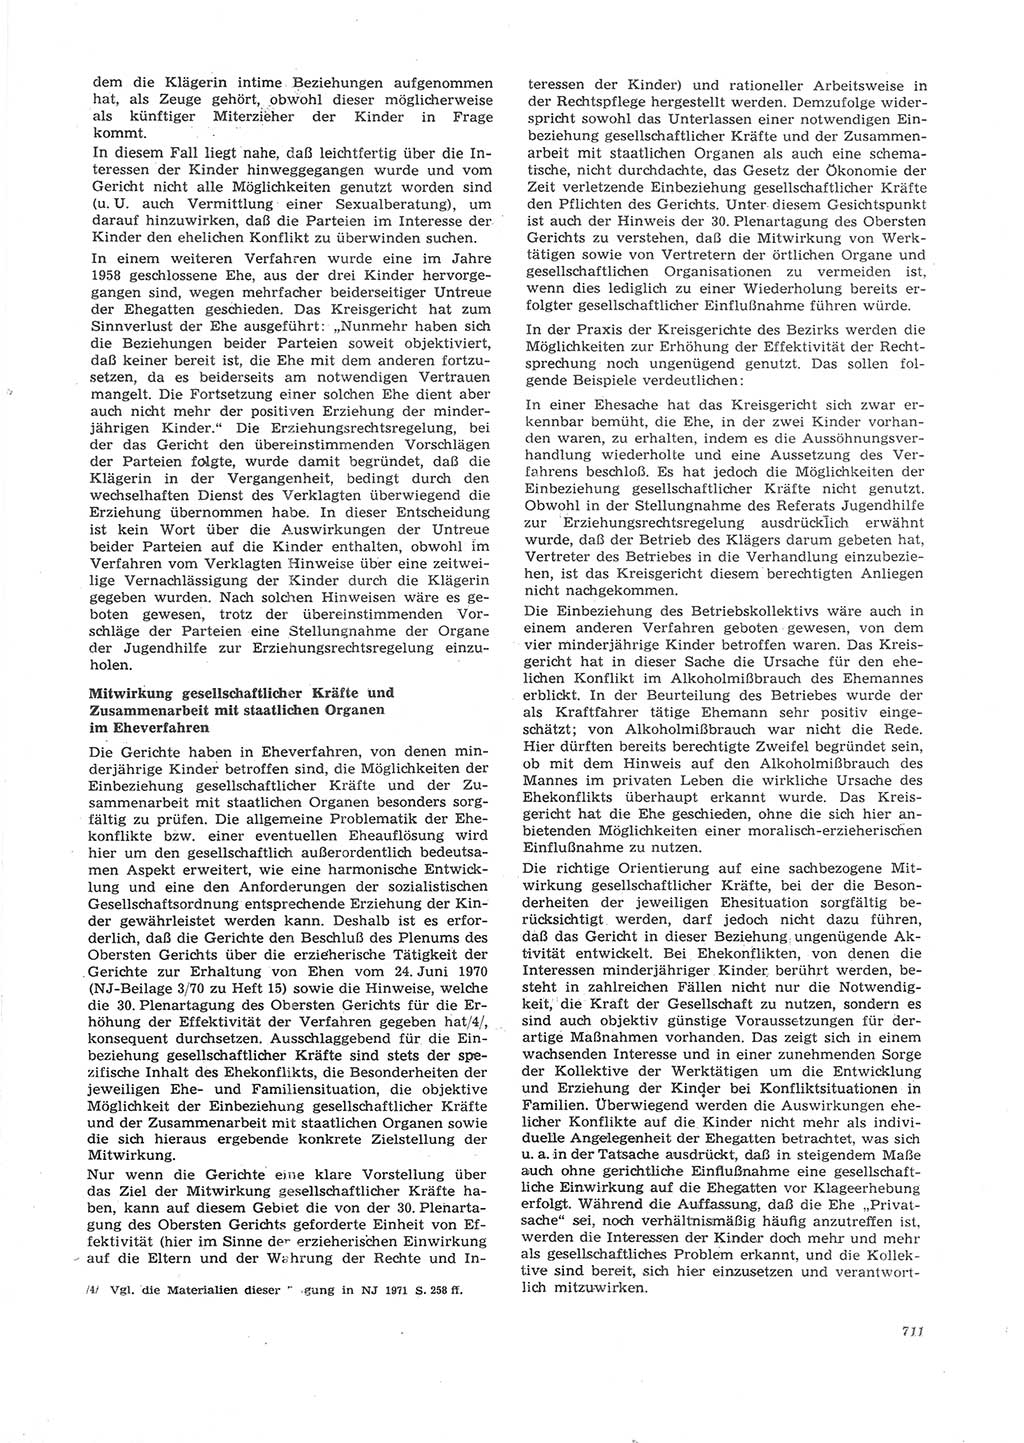 Neue Justiz (NJ), Zeitschrift für Recht und Rechtswissenschaft [Deutsche Demokratische Republik (DDR)], 26. Jahrgang 1972, Seite 711 (NJ DDR 1972, S. 711)